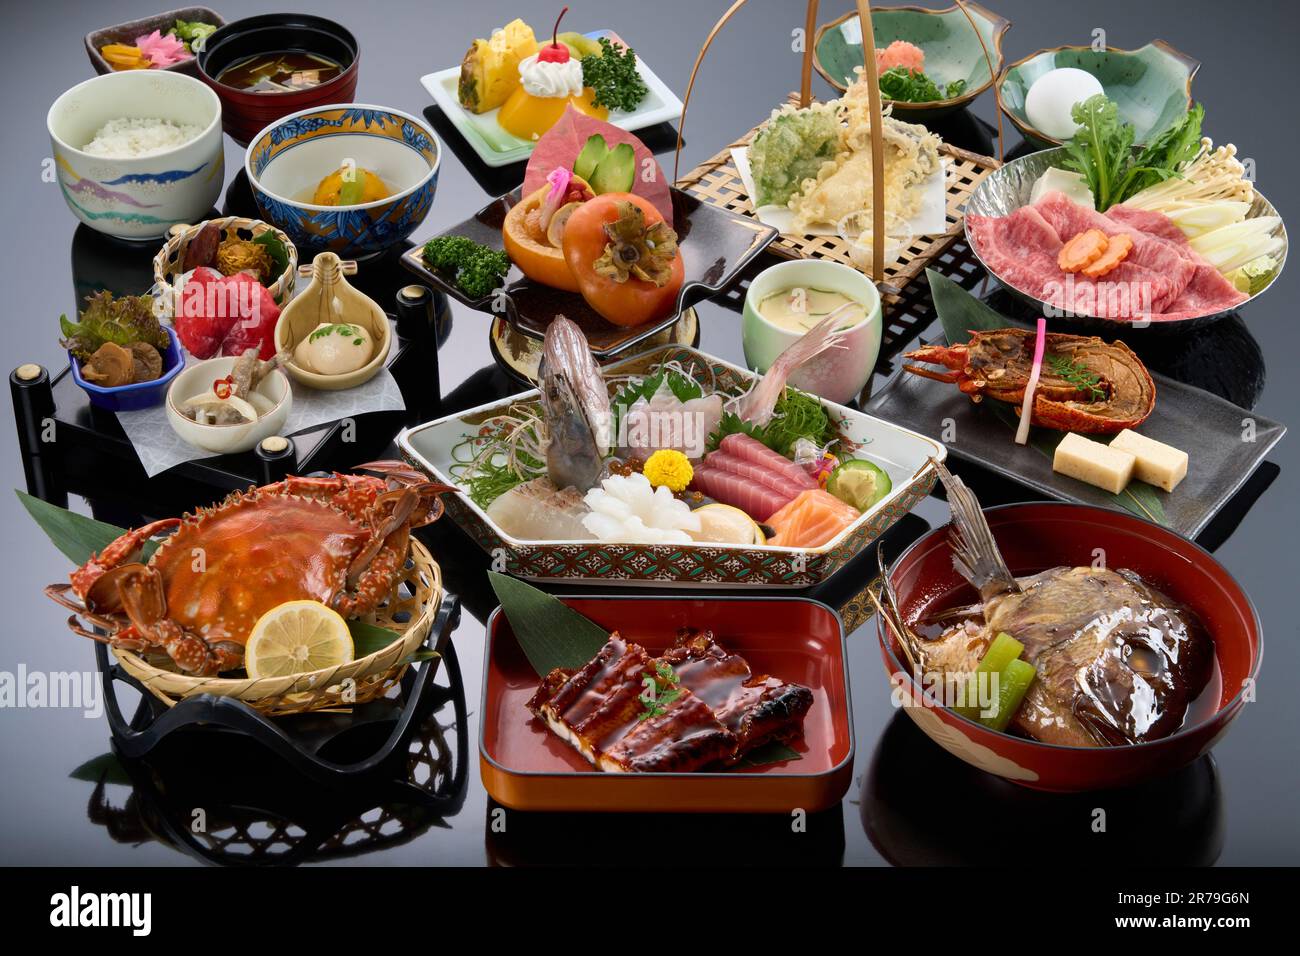 Cuisine japonaise kaiseki de haut niveau Banque D'Images